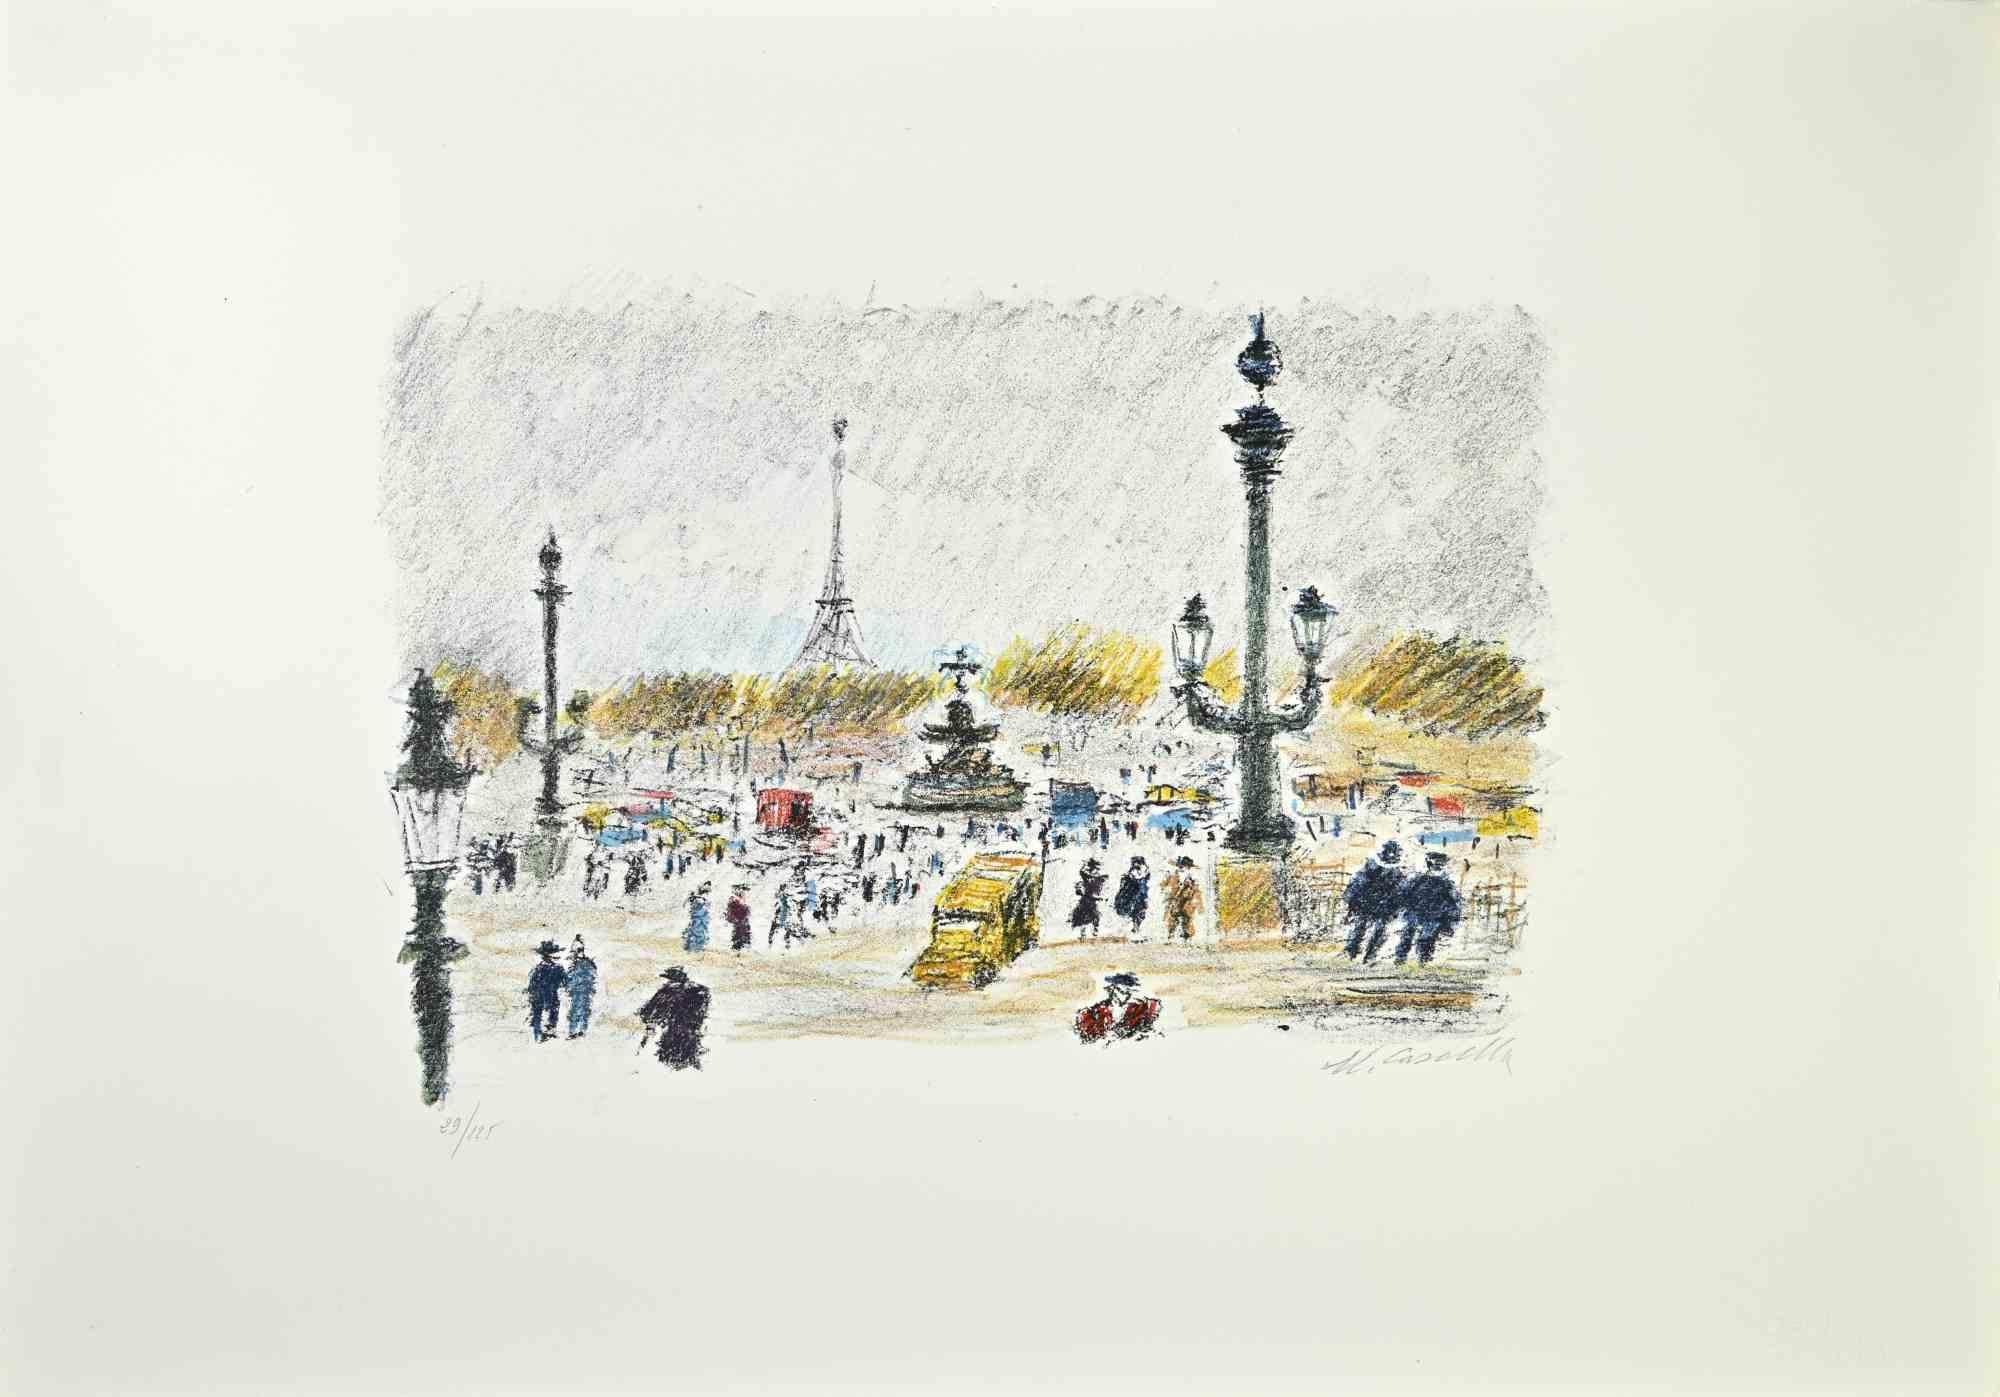  Paris entlang der Seine ist ein Kunstwerk des italienischen Künstlers Michele Cascella aus dem Jahr 1979.

Kolorierte Lithographie auf Papier des Portfolios "Landschaft", 1979, mit sechs Originallithographien und den Gedichten von Franco Simongini